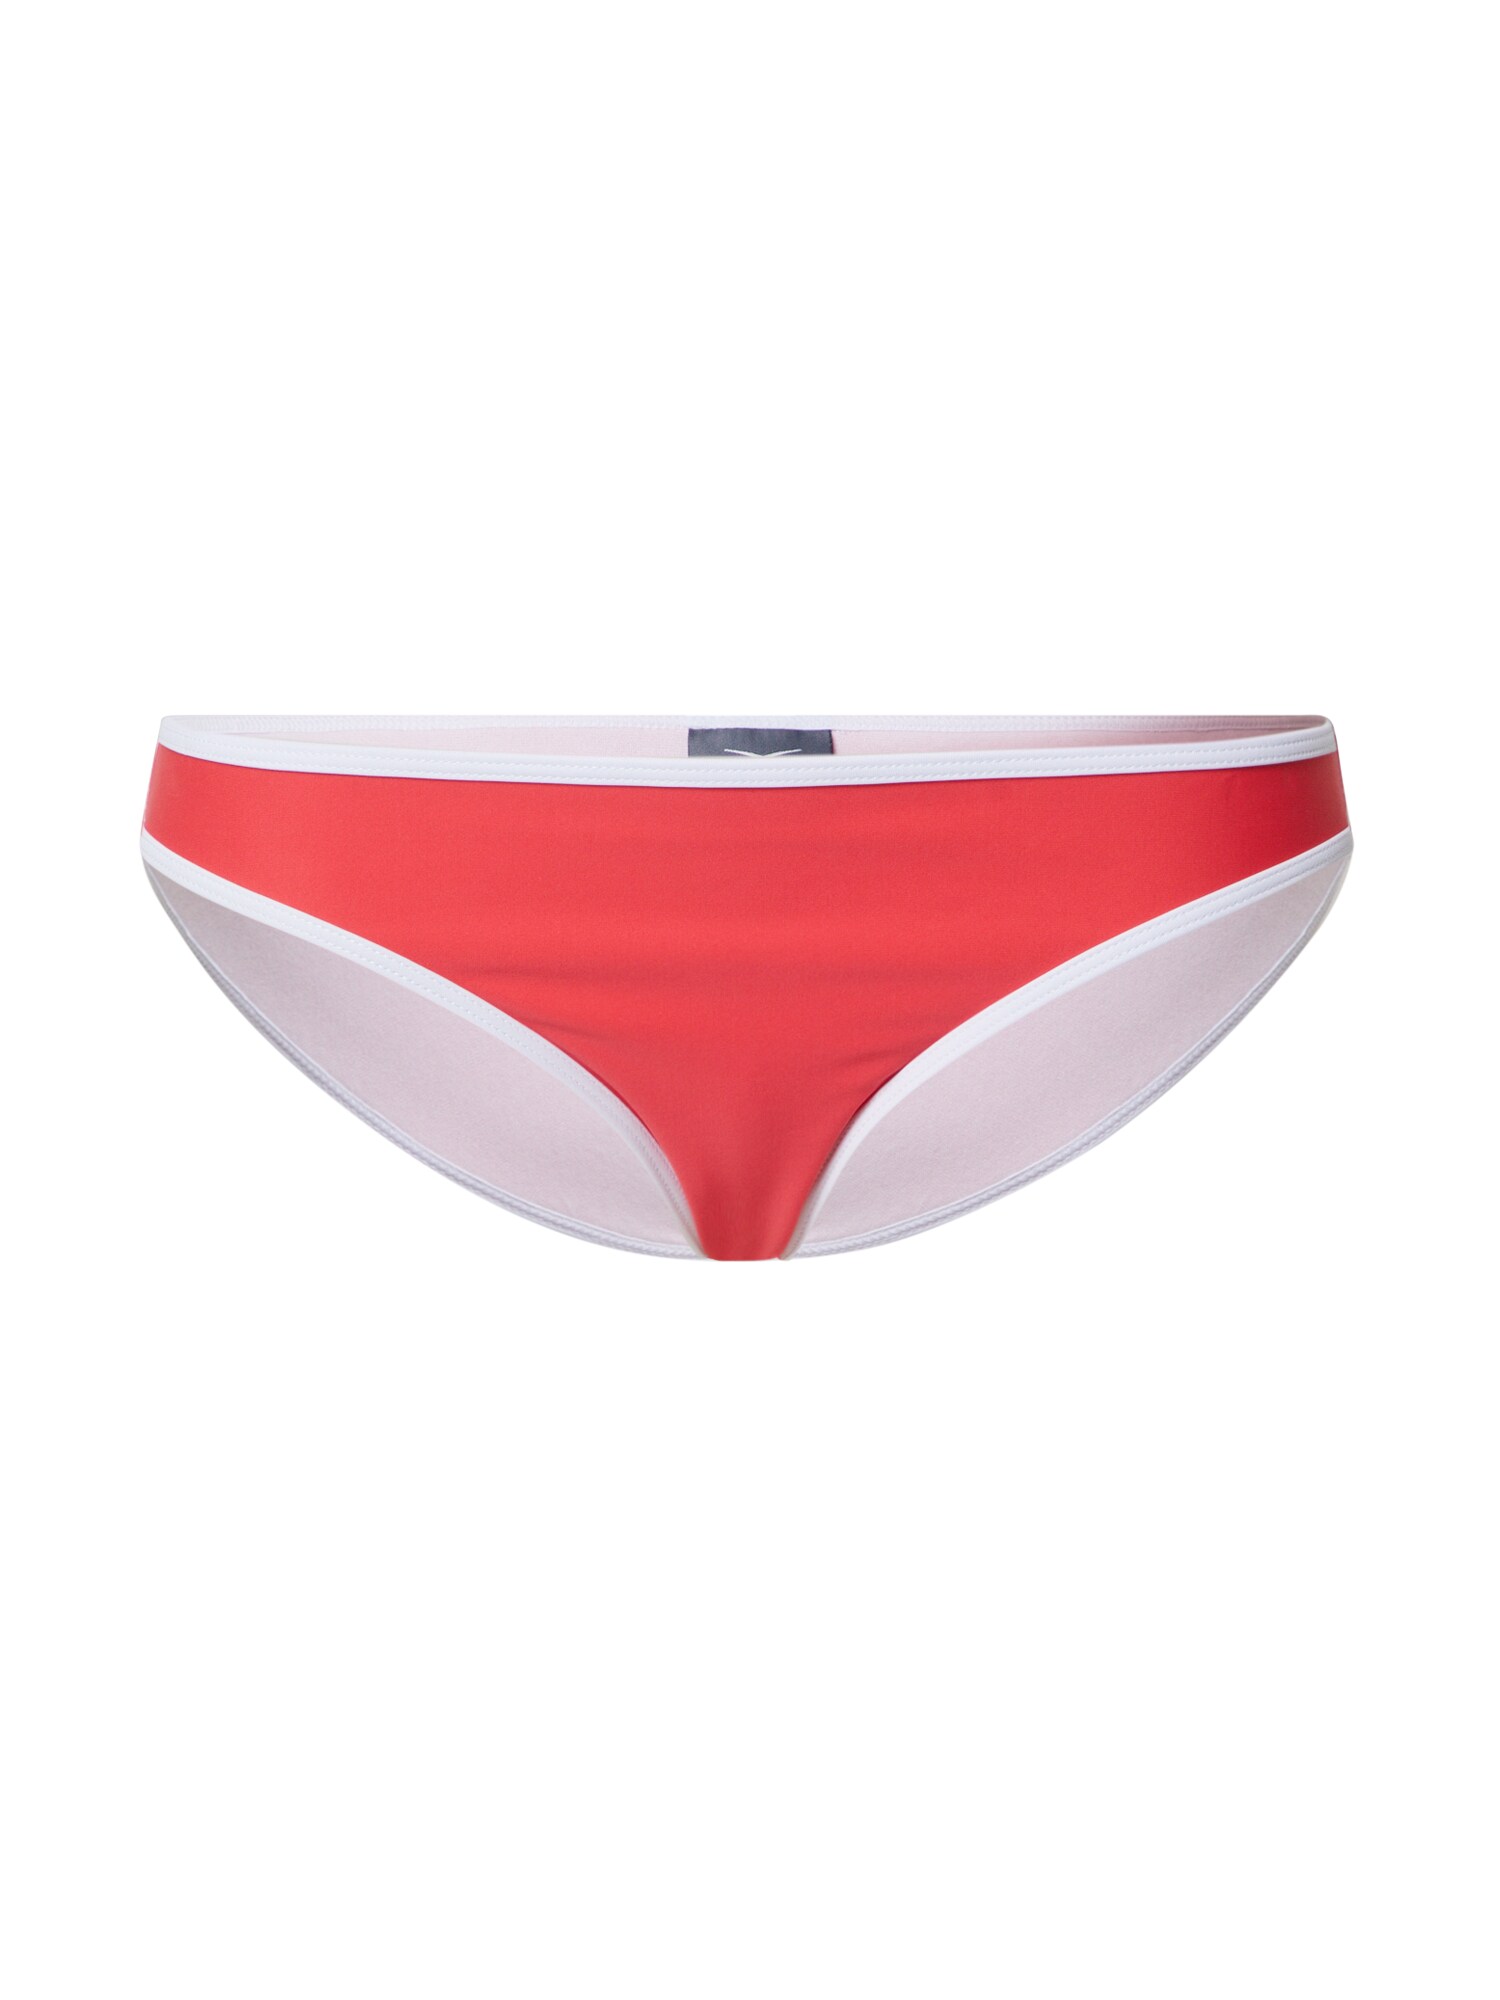 VENICE BEACH Bikinio kelnaitės raudona / balta